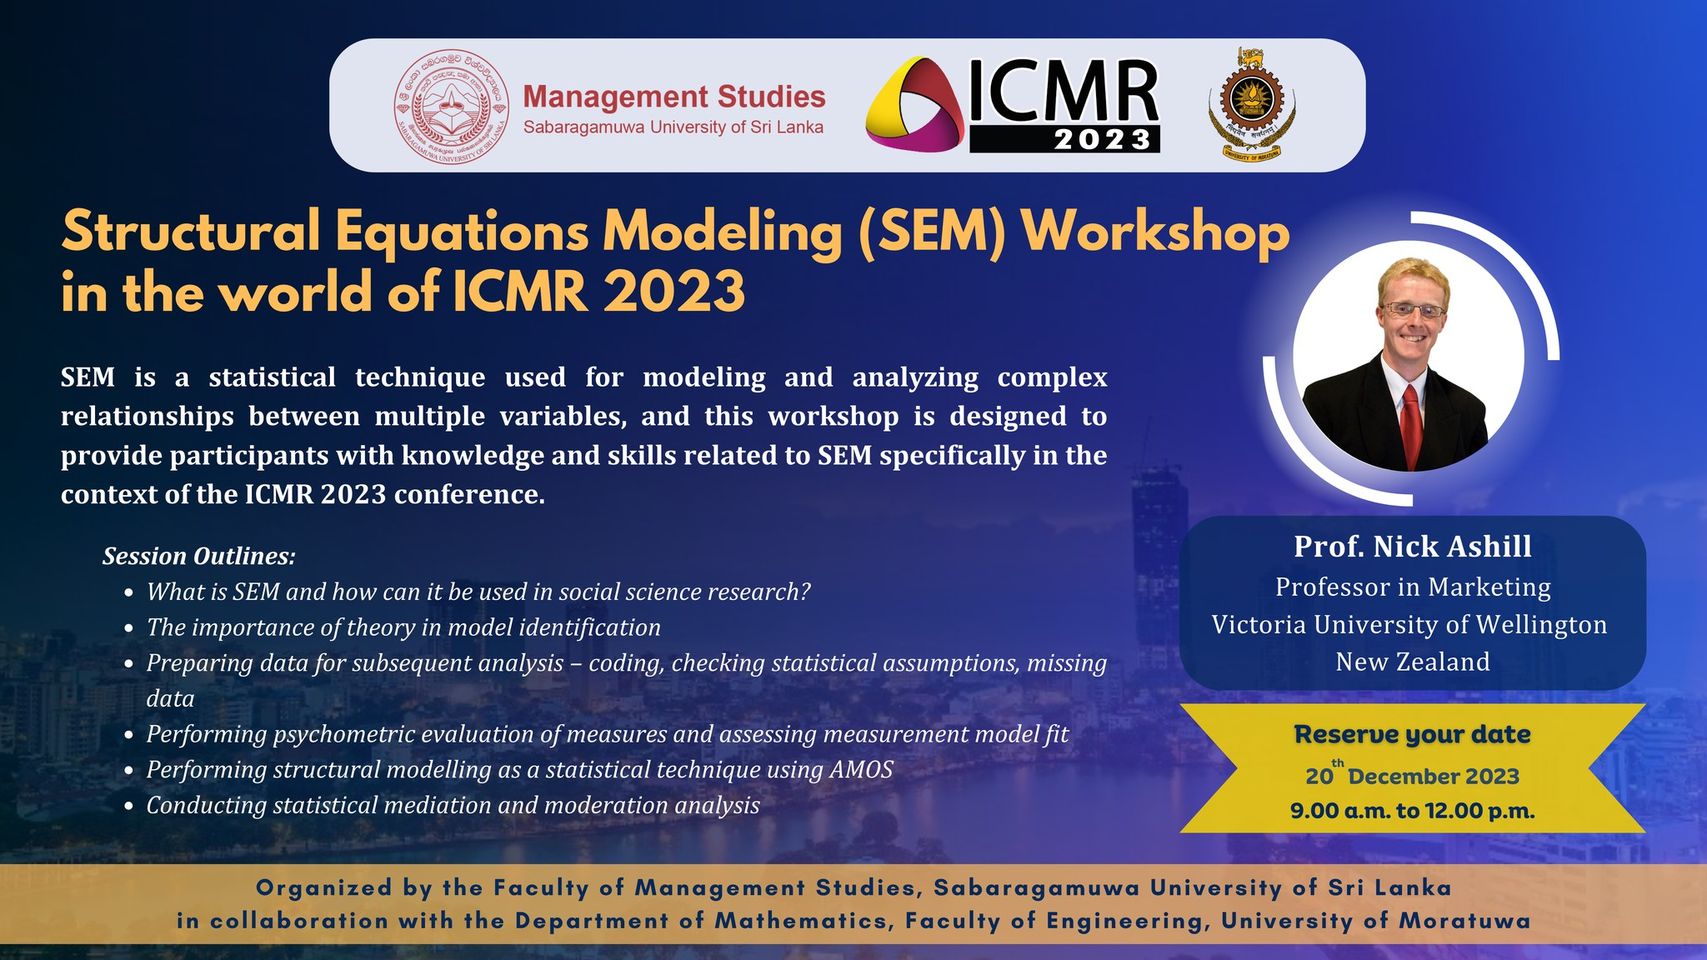 Structural Equations Modelling (SEM) Workshop: ICMR 2023